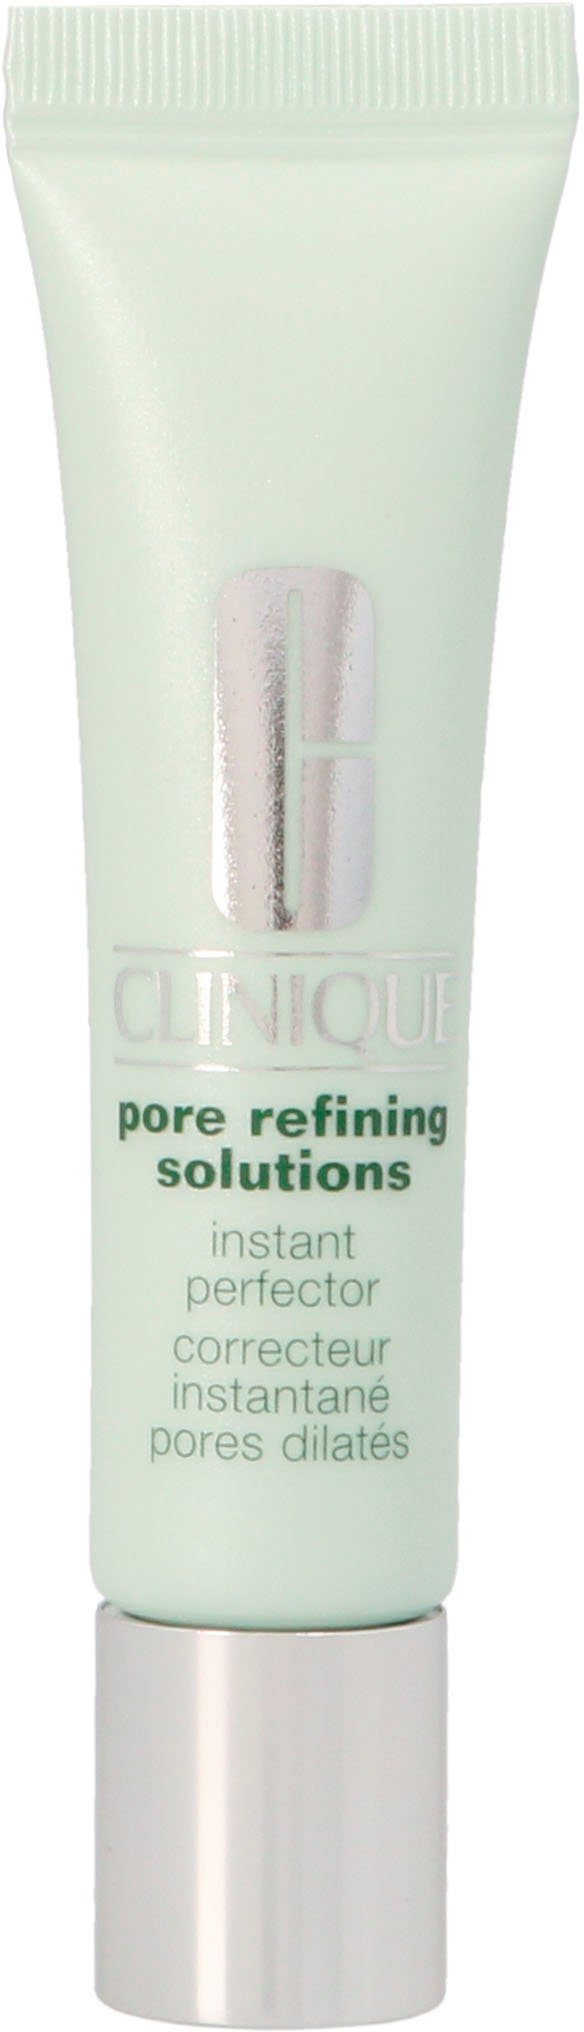 CLINIQUE Getönte Gesichtscreme Pore Refining Solutions Instant Perfector,  Lässt den Teint ebenmäßiger erscheinen